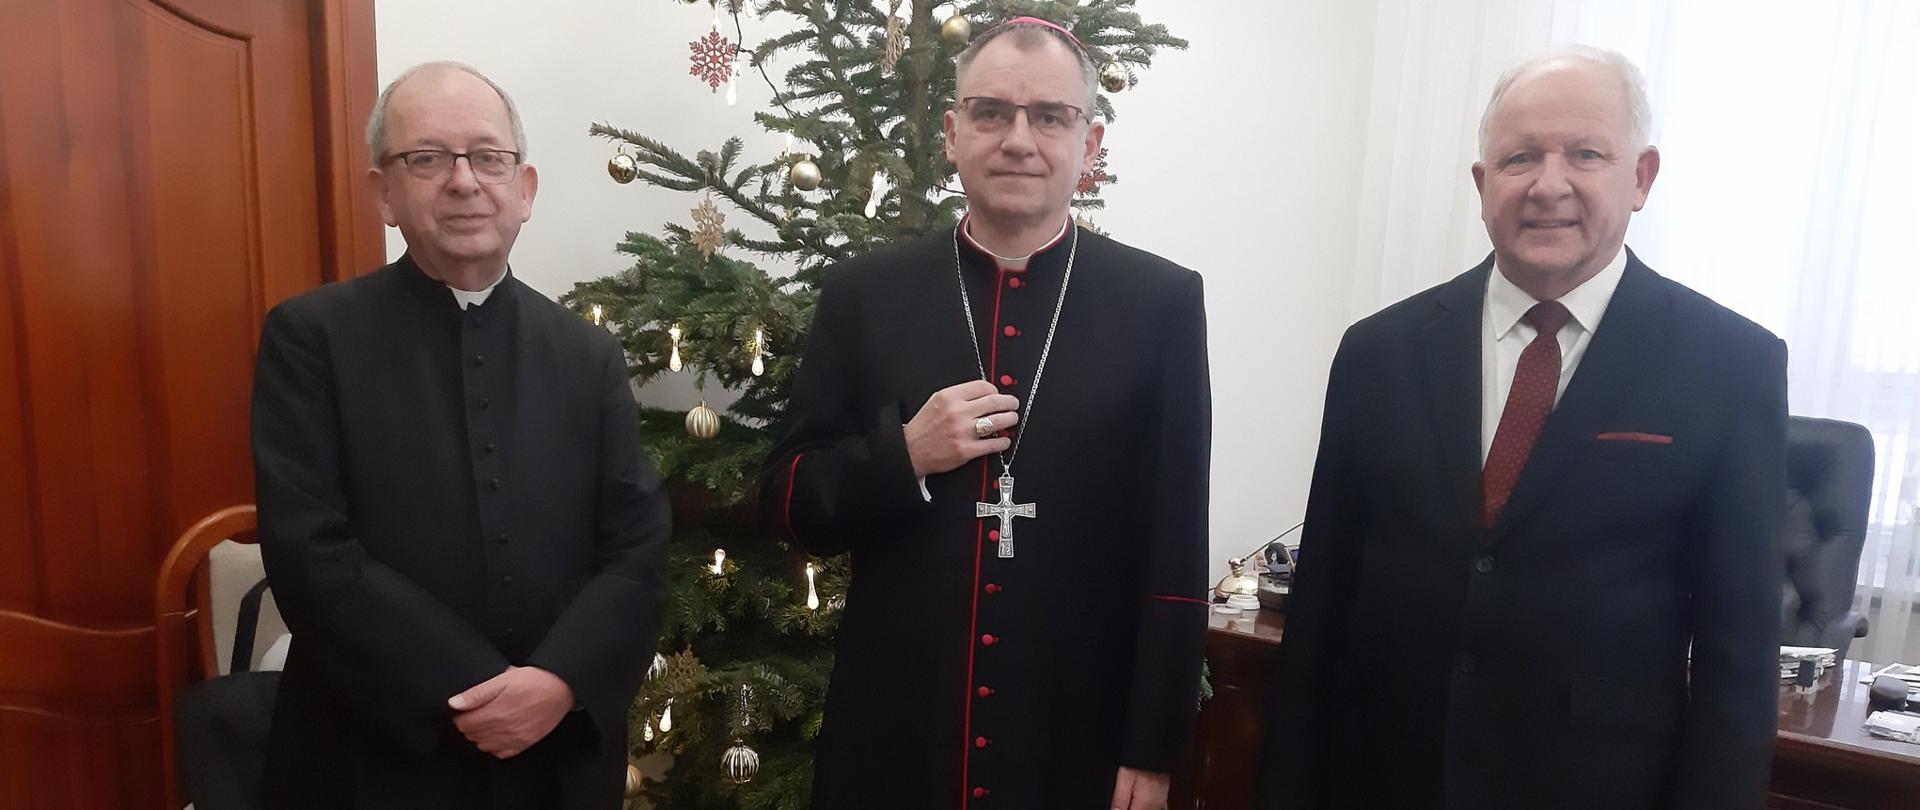 Na a fotografii na tle świątecznej choinki stoją od prawej: Burmistrz Miasta, Biskup Robert Chrząszcz, proboszcz